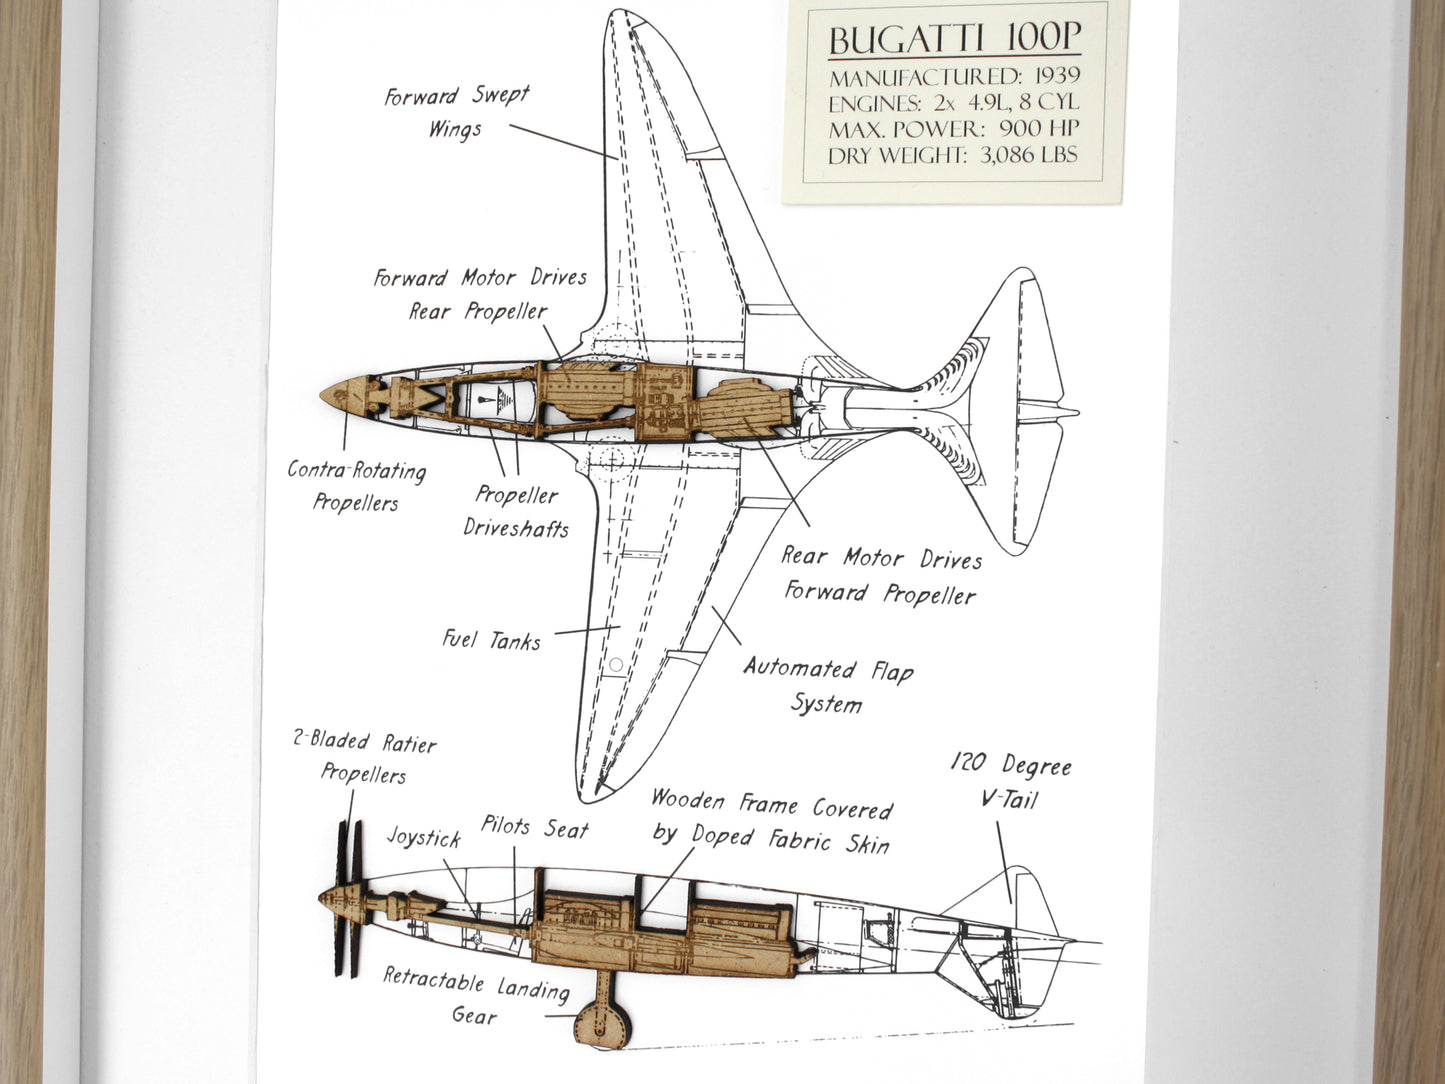 Bugatti 100P aircraft art